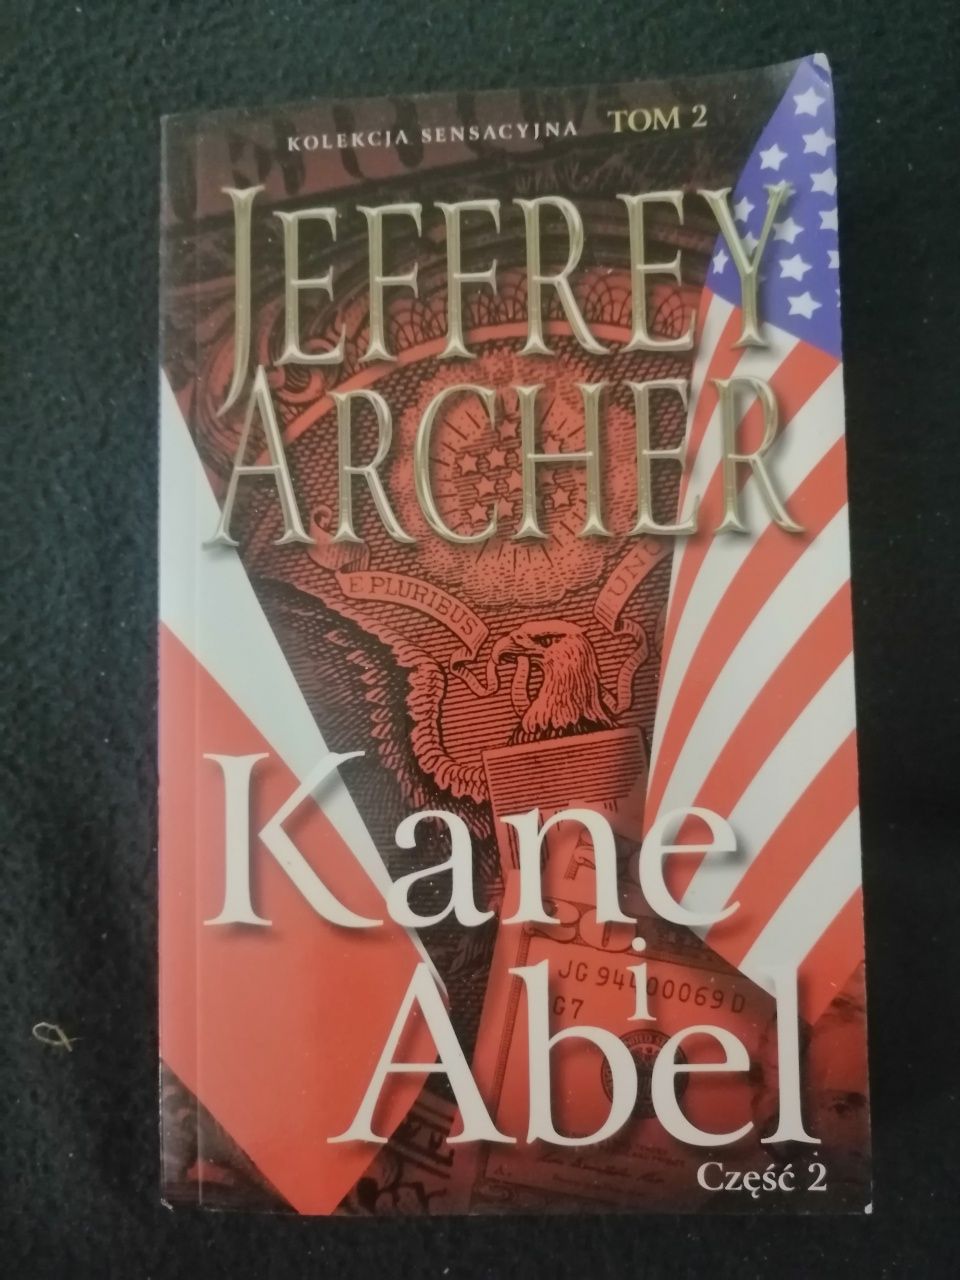 Kane i Abel J. Archer Cz. II